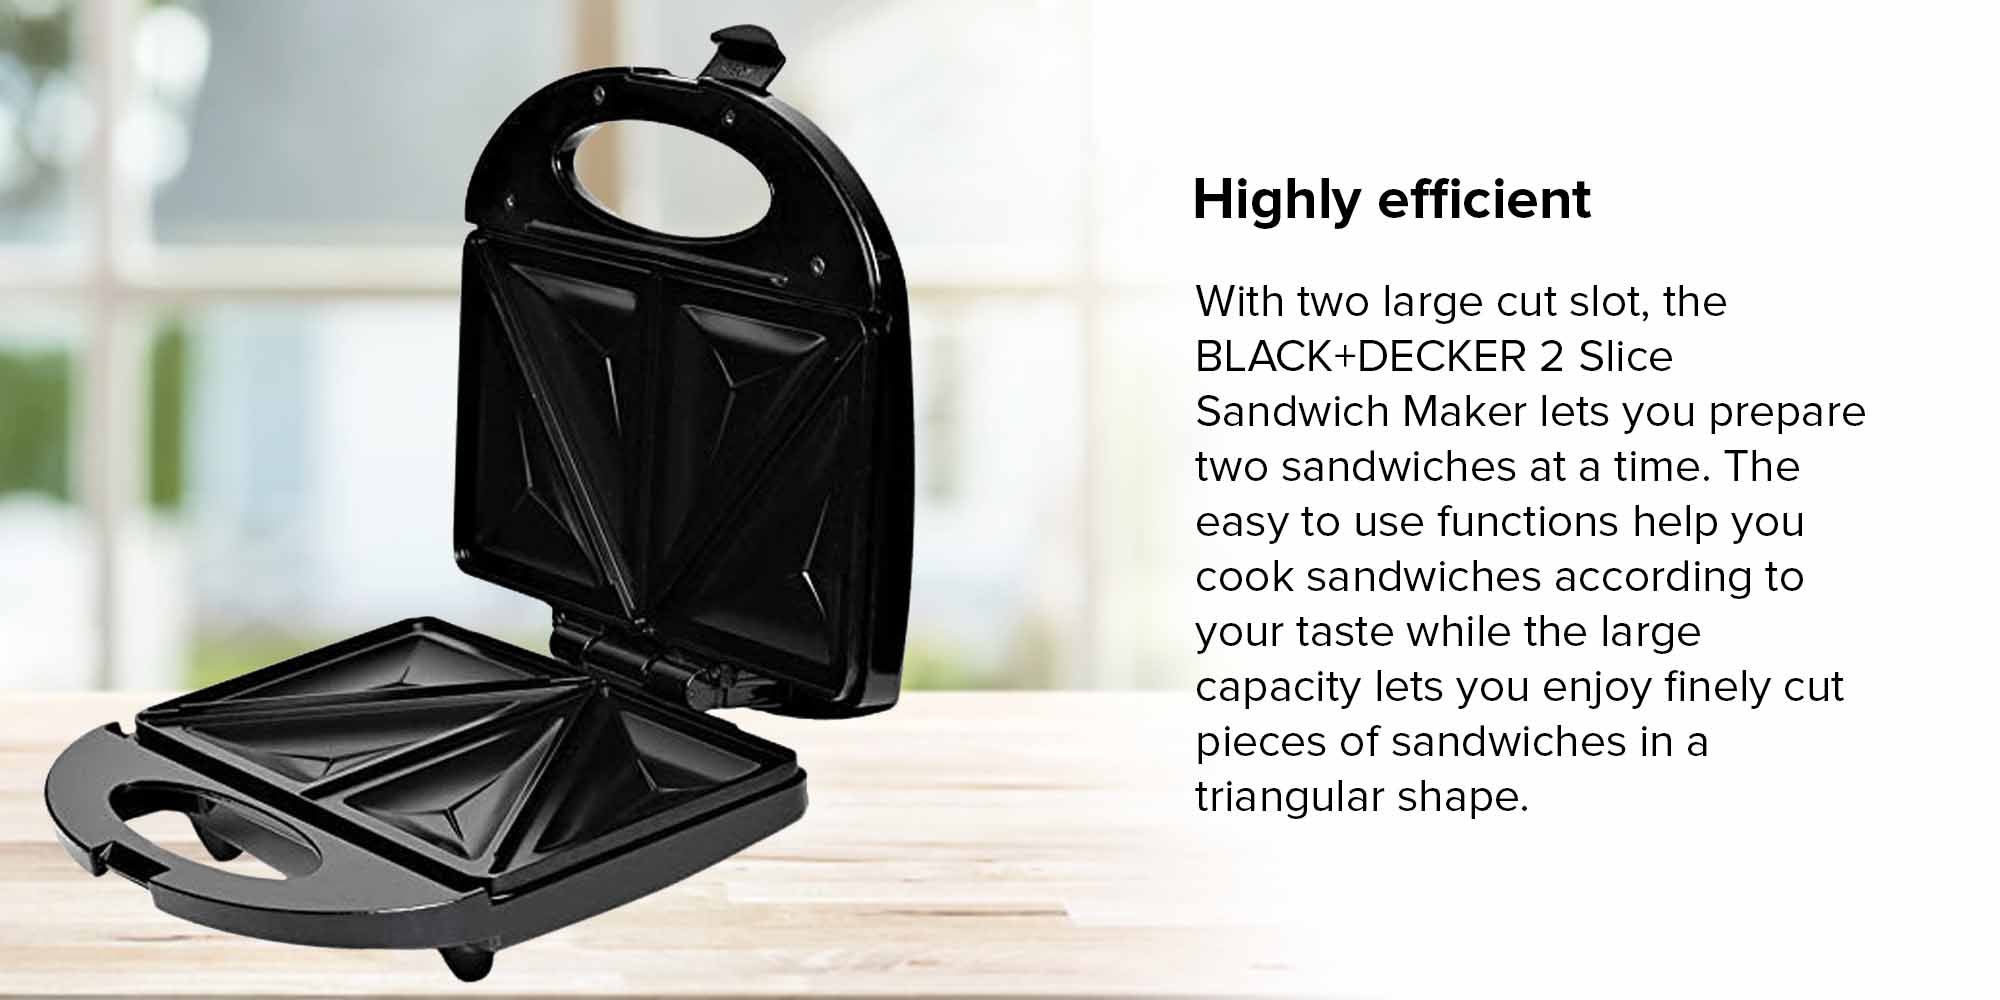 BLACK & DECKER SANDWICH MAKER TS1000 2 slice